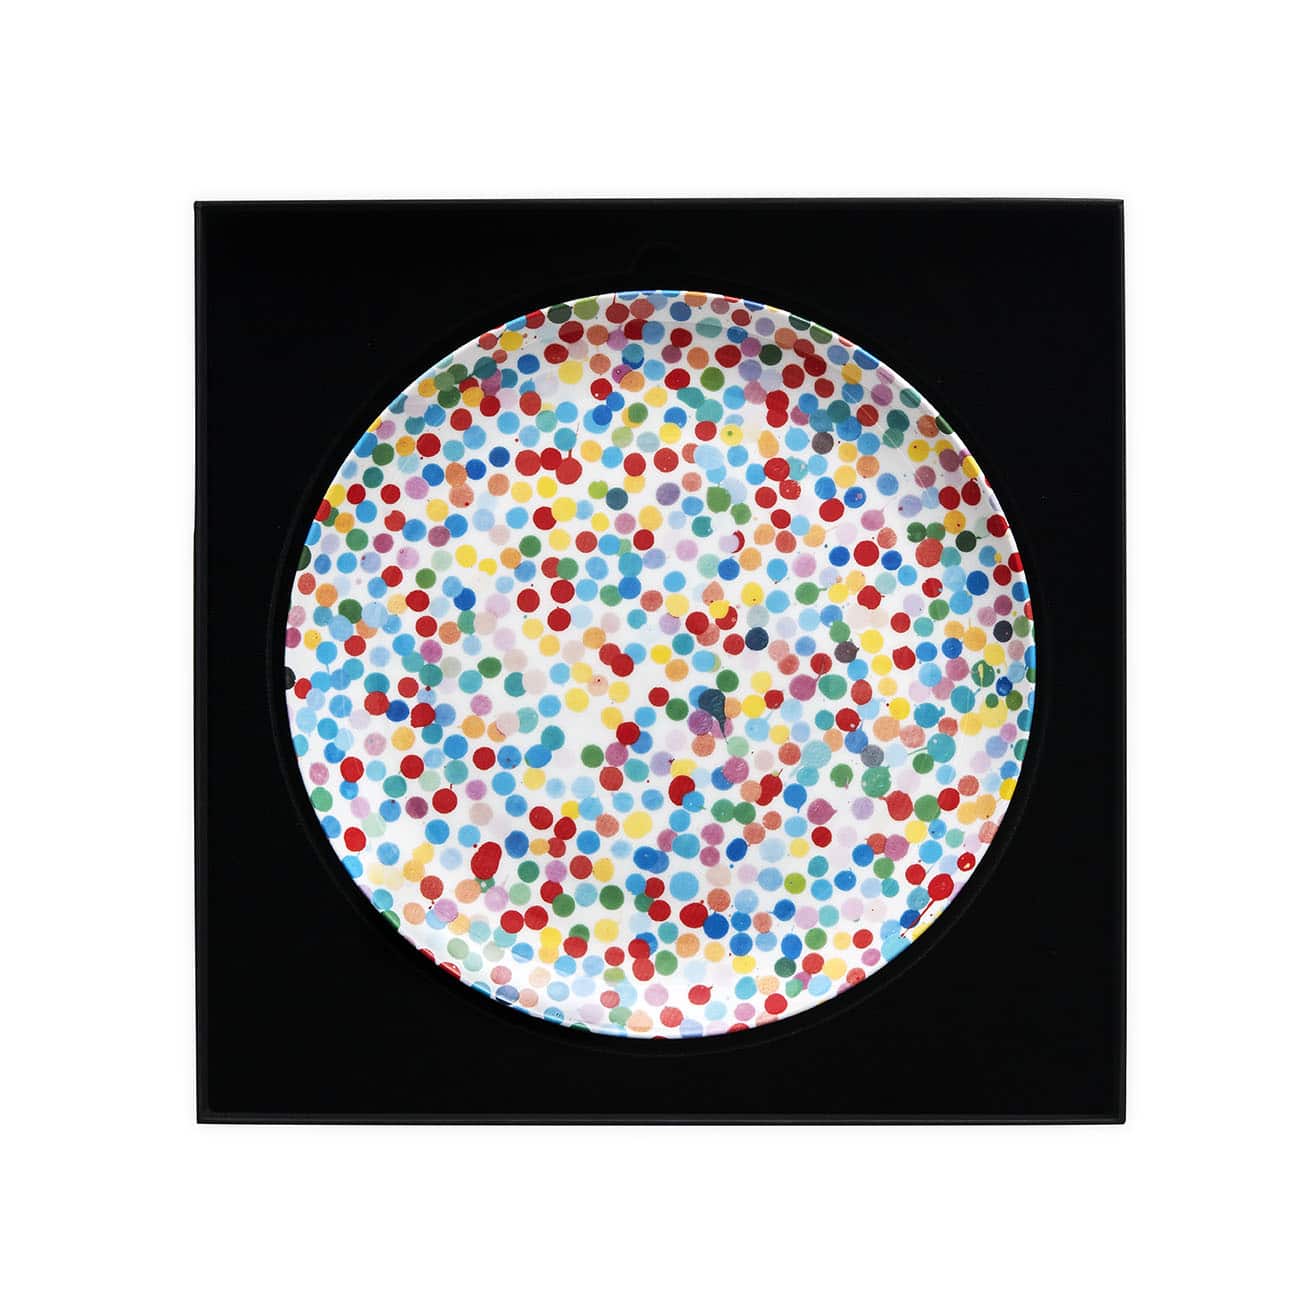 Damien Hirst - Placa serigrafiada grande con puntos en todas partes, diseño de puntos de moneda